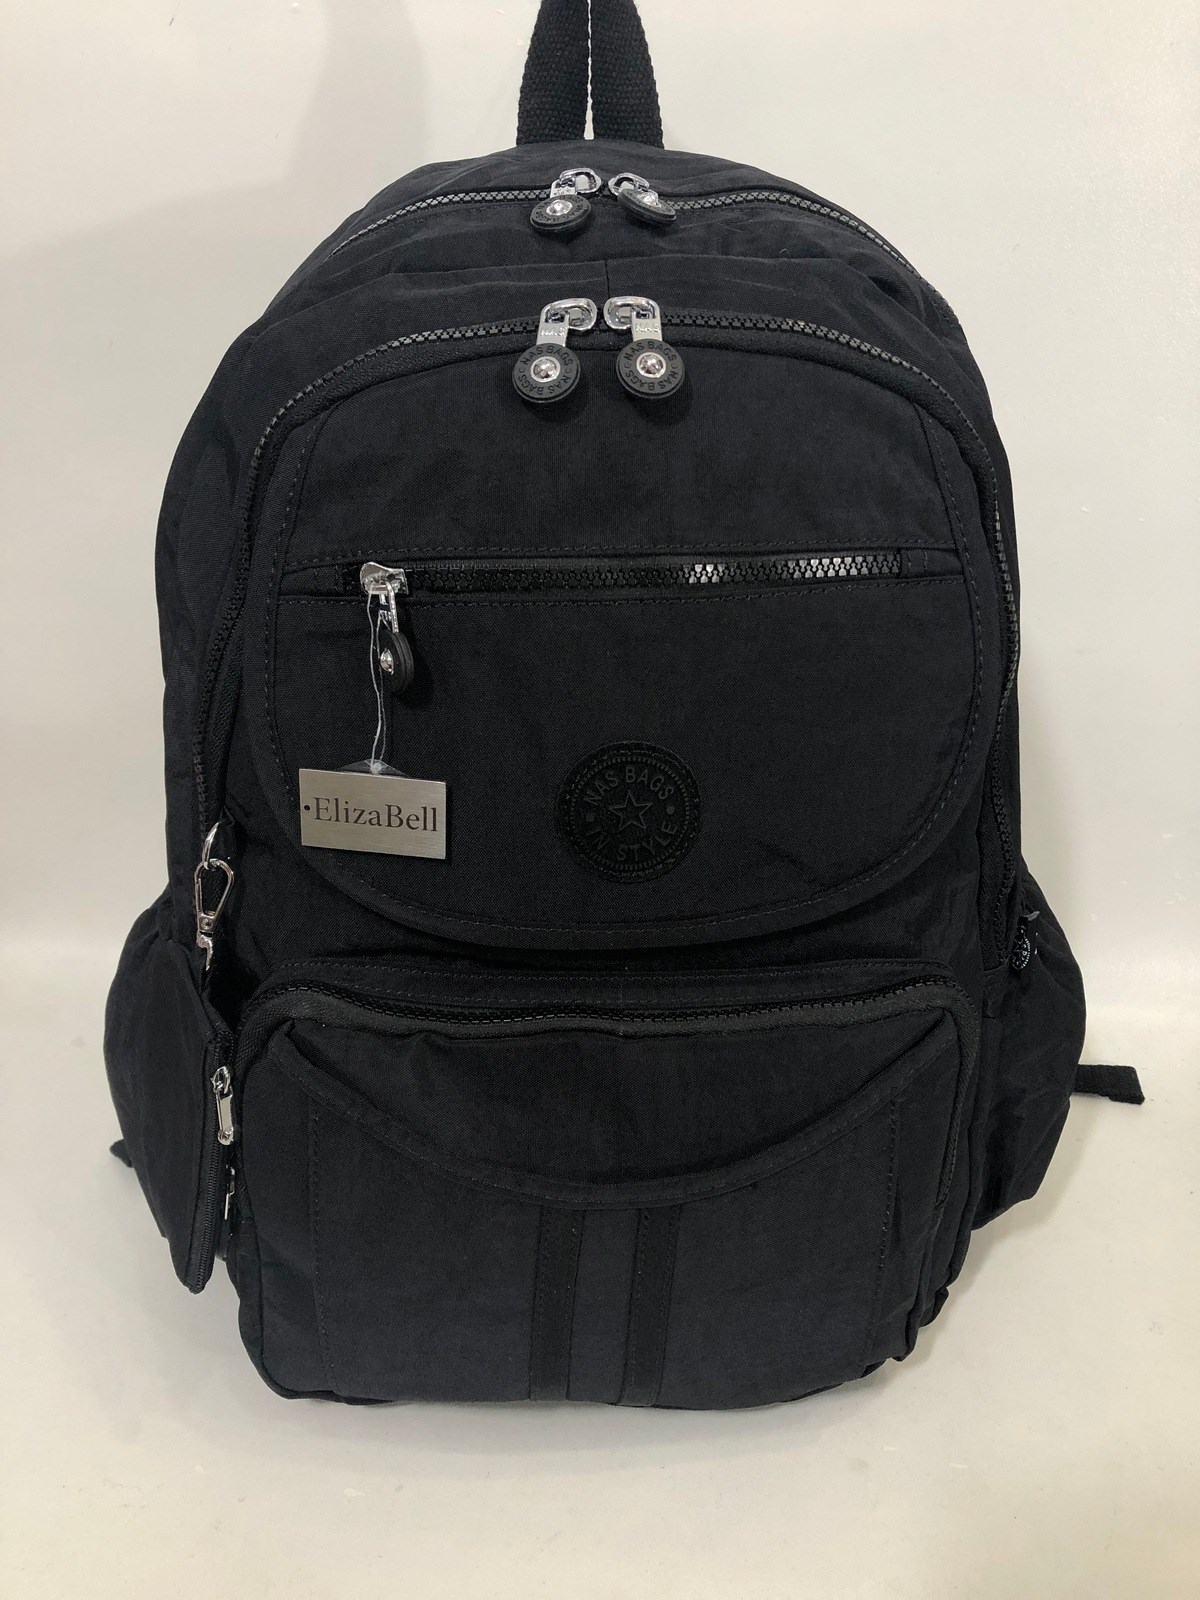 Kadın sırt çantası ve okul çantası krinkıl kumaş ebat 45cm35cm siyah  |elizabell.com.tr